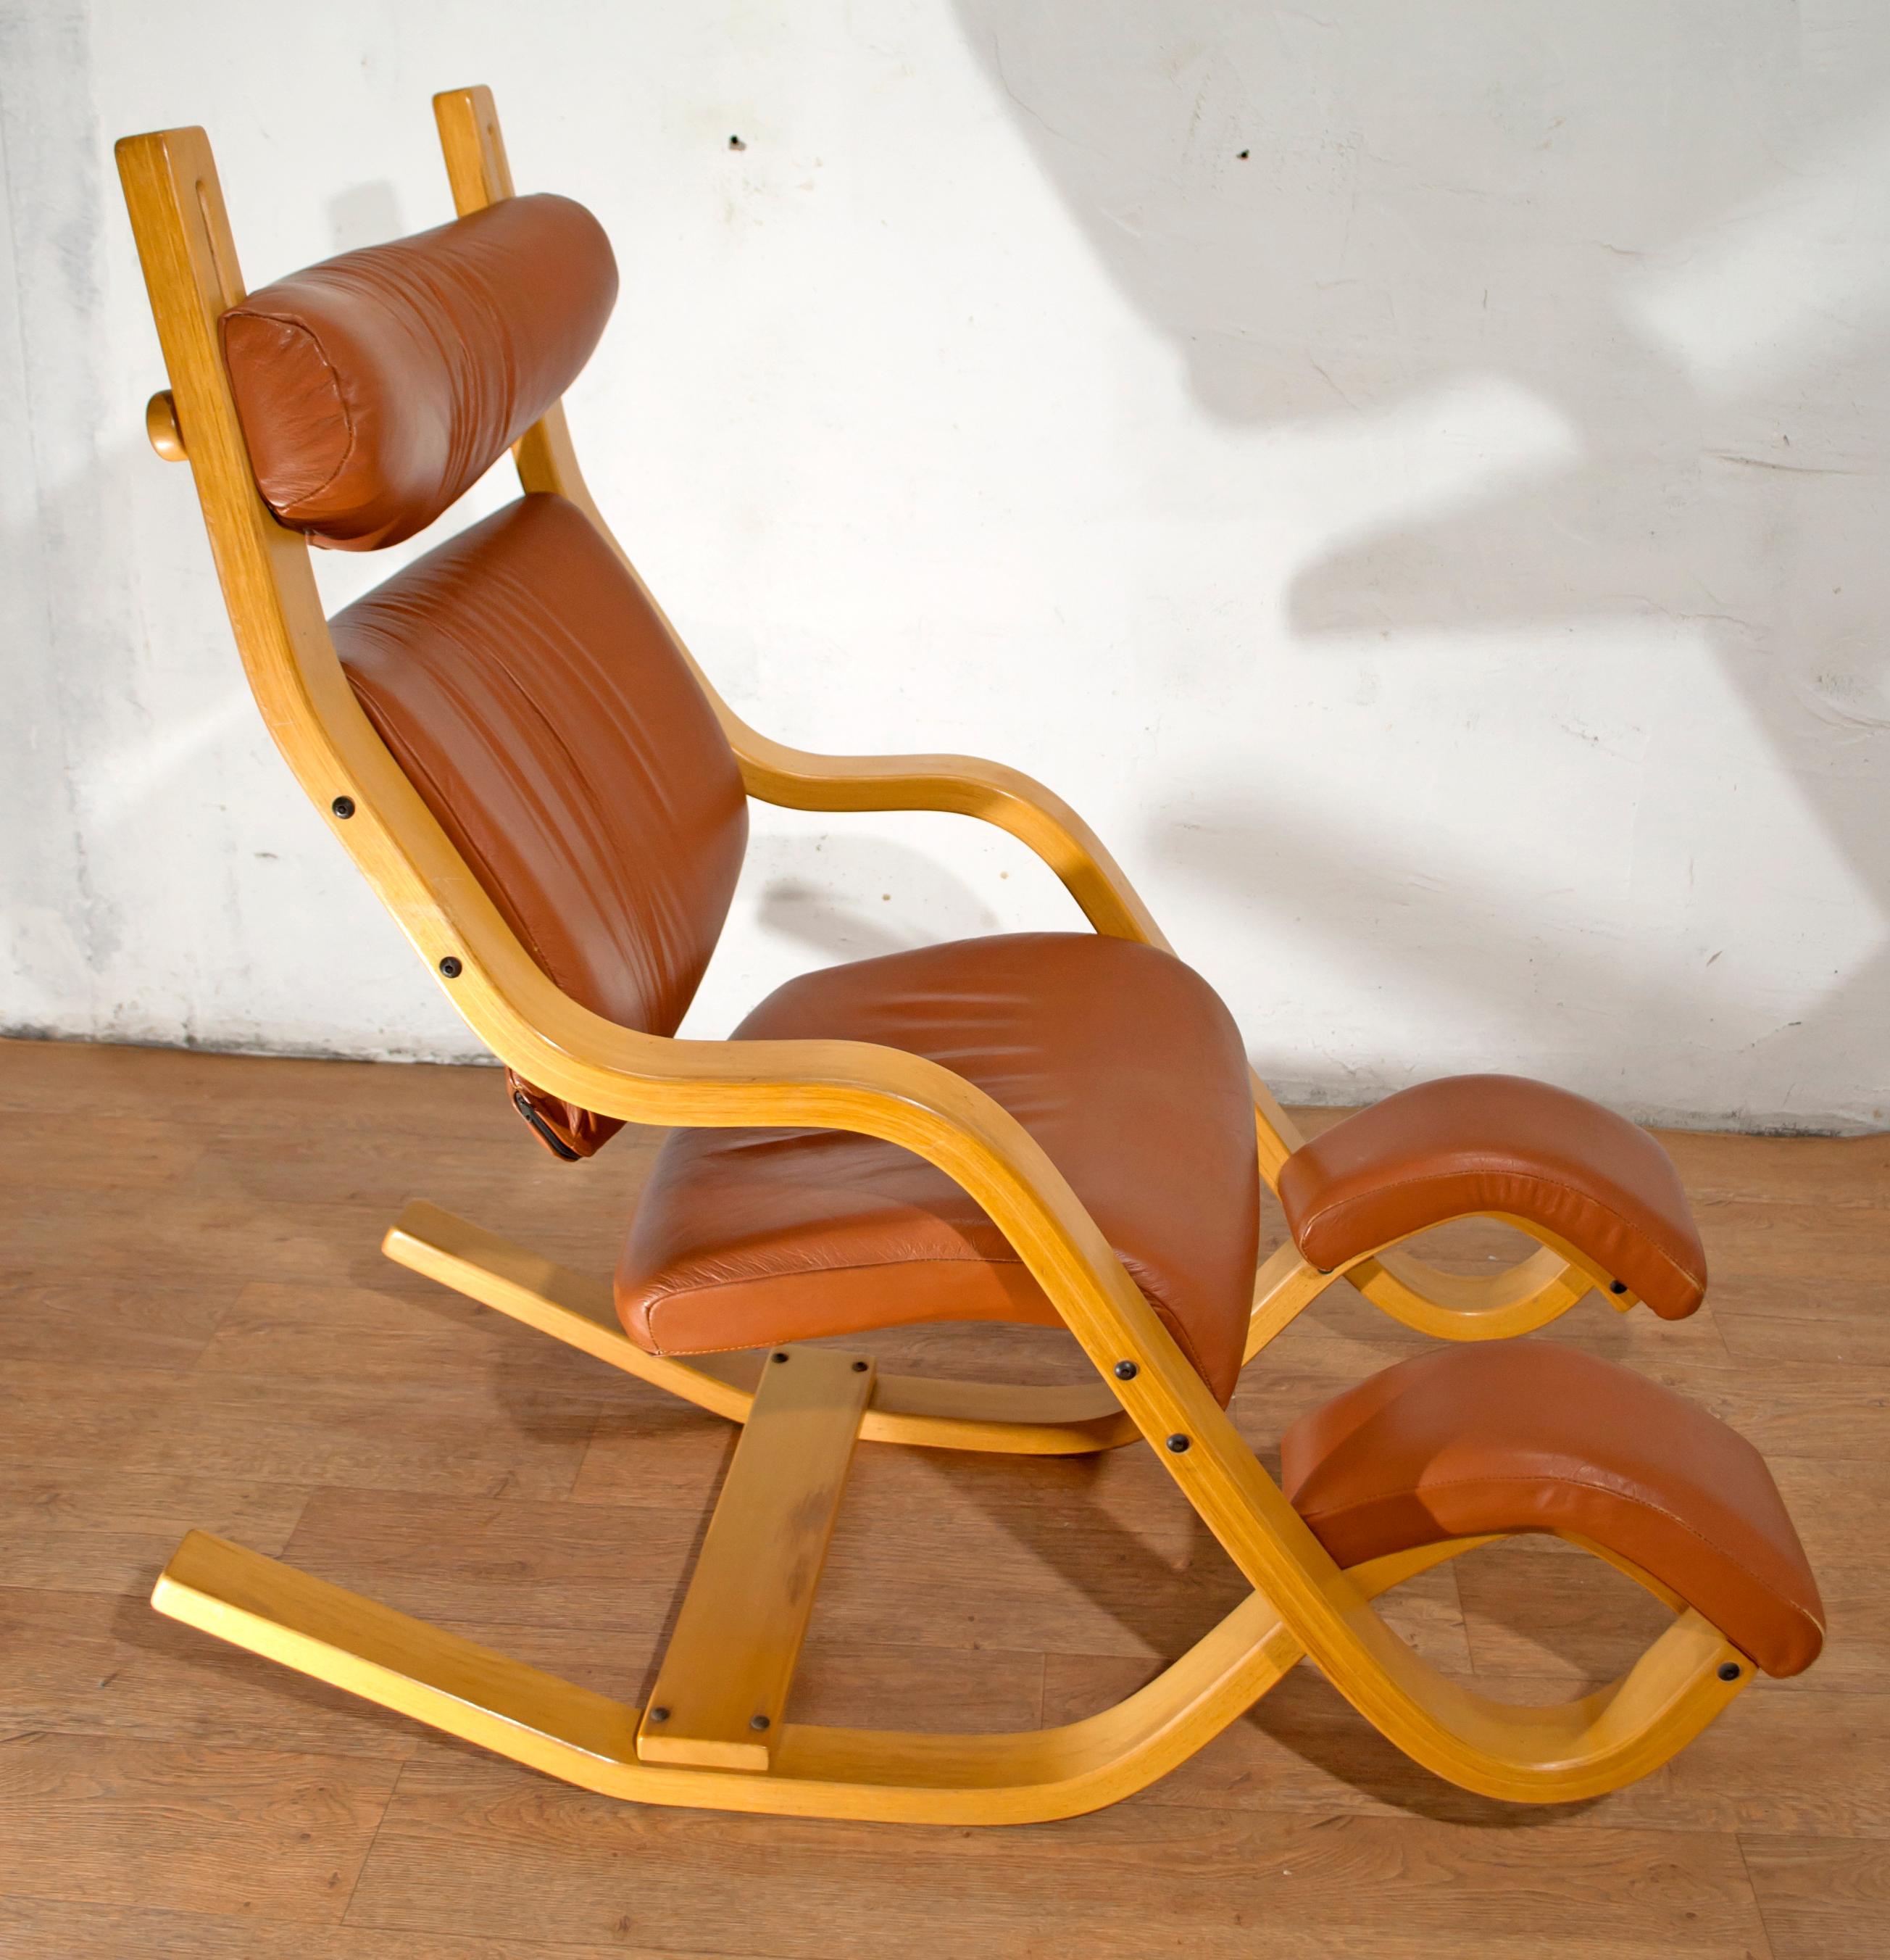 Dieser Stuhl aus Buchenholz mit Lederpolsterung gehört zur Tripos Balans-Kollektion. Er wurde in den frühen 1980er Jahren von der berühmten skandinavischen Firma Stokke hergestellt und ist einer der ersten Prototypen:: die von Stokke produziert